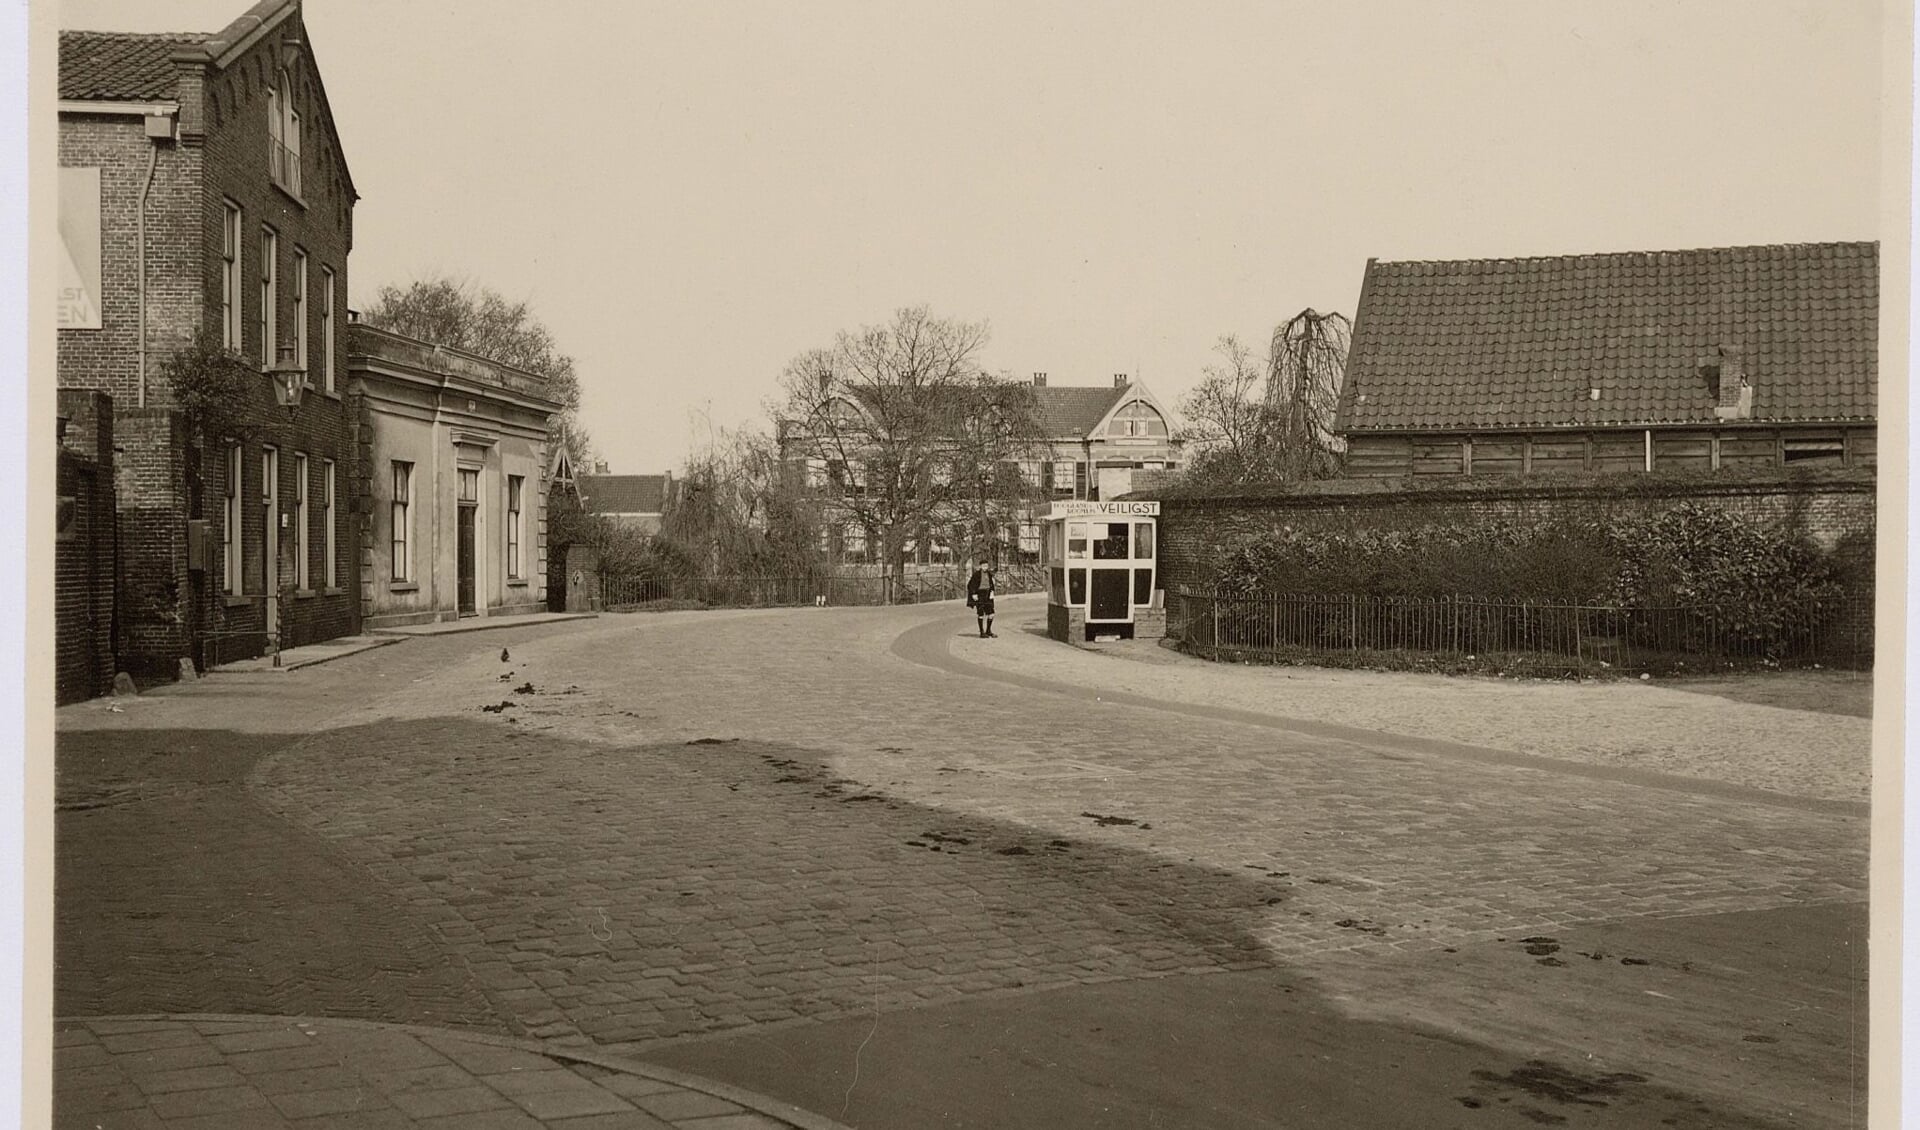 Het eerste gebouw links is de oude gasfabriek, de eerste gasfabriek van Amersfoort. 